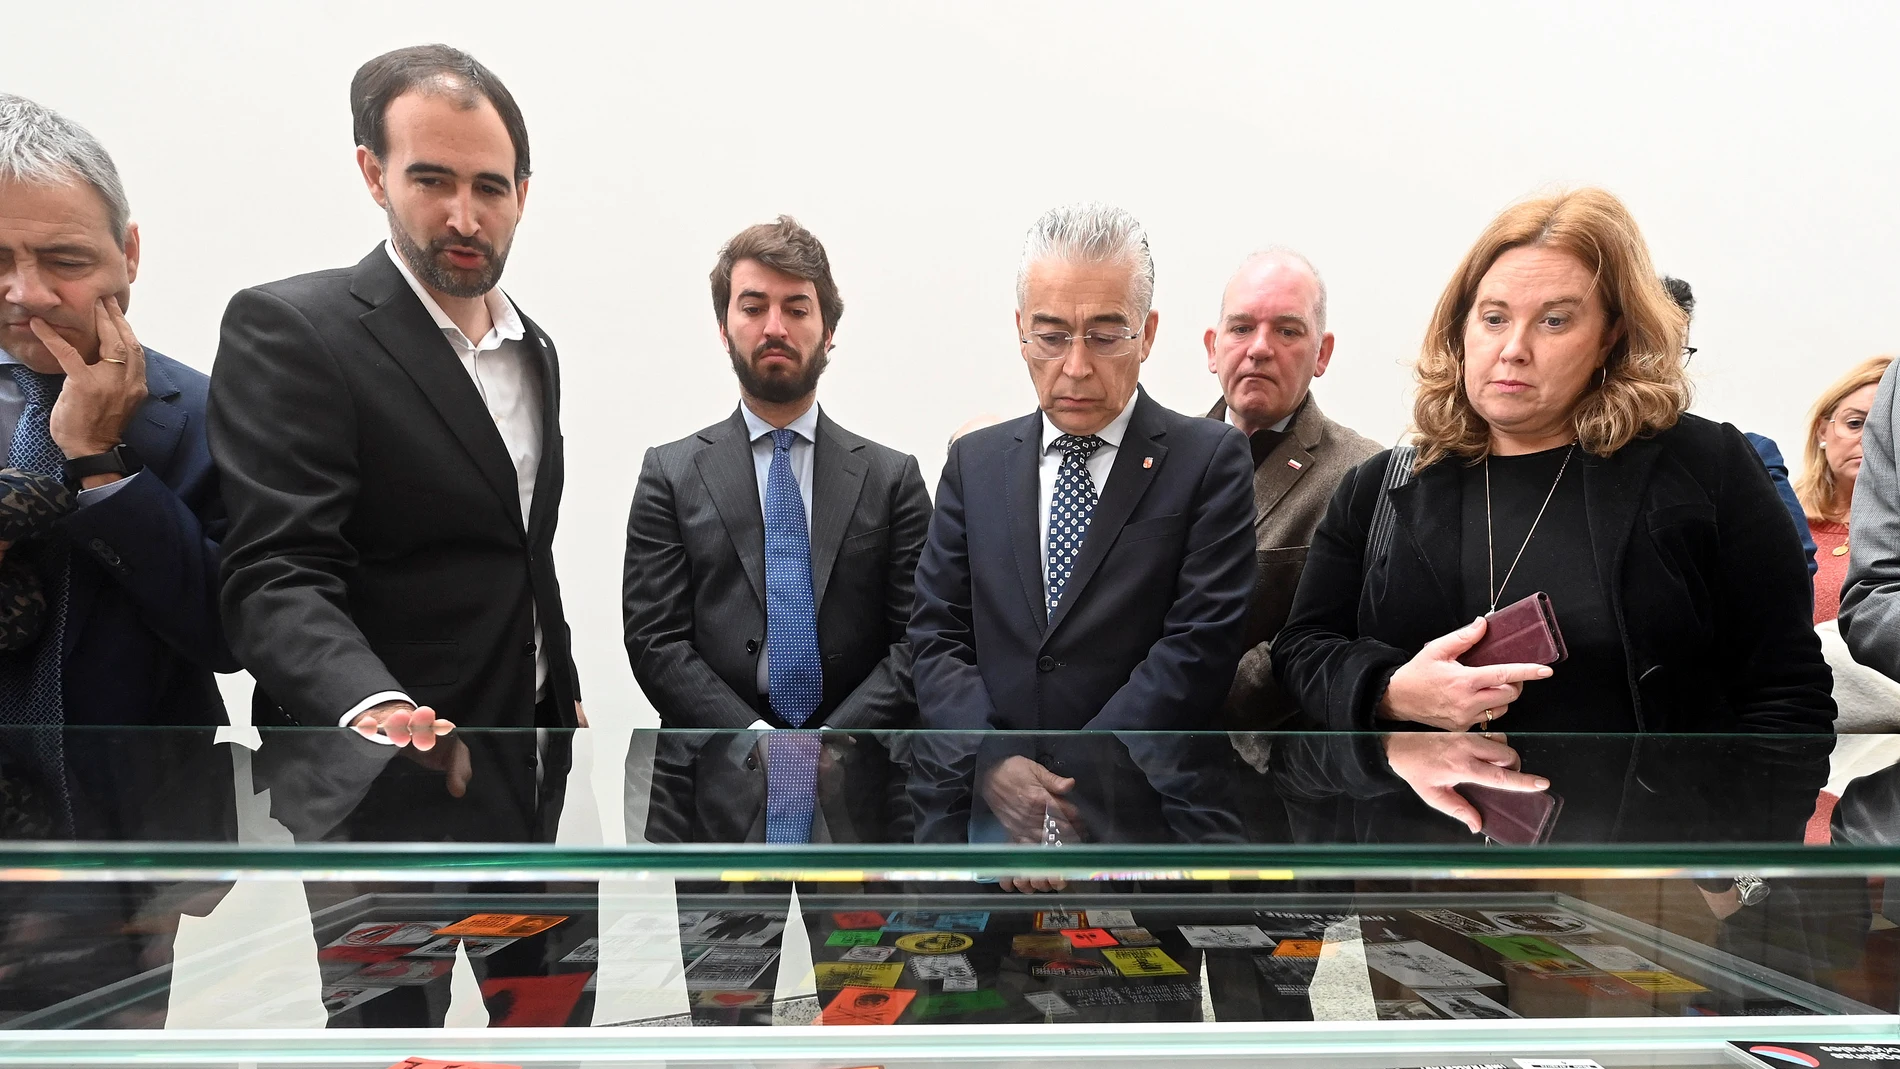  El vicepresidente de la Junta, Juan García-Gallardo, inaugura la exposición ‘Pegatinas del Odio’